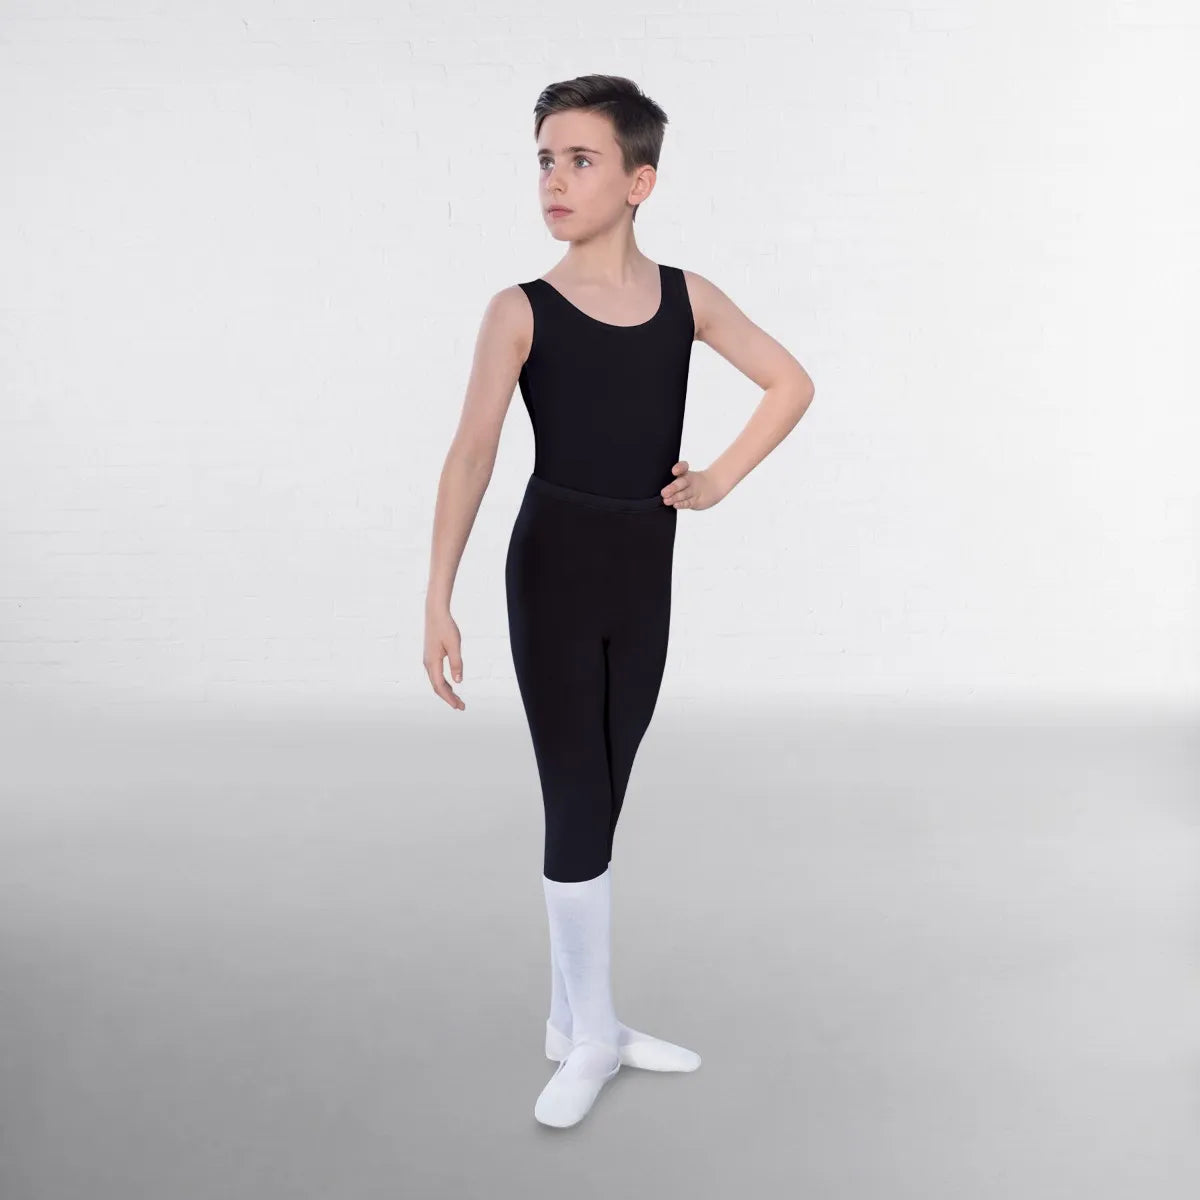 https://www.balletballet.uk/cdn/shop/products/2400.webp?v=1669054075